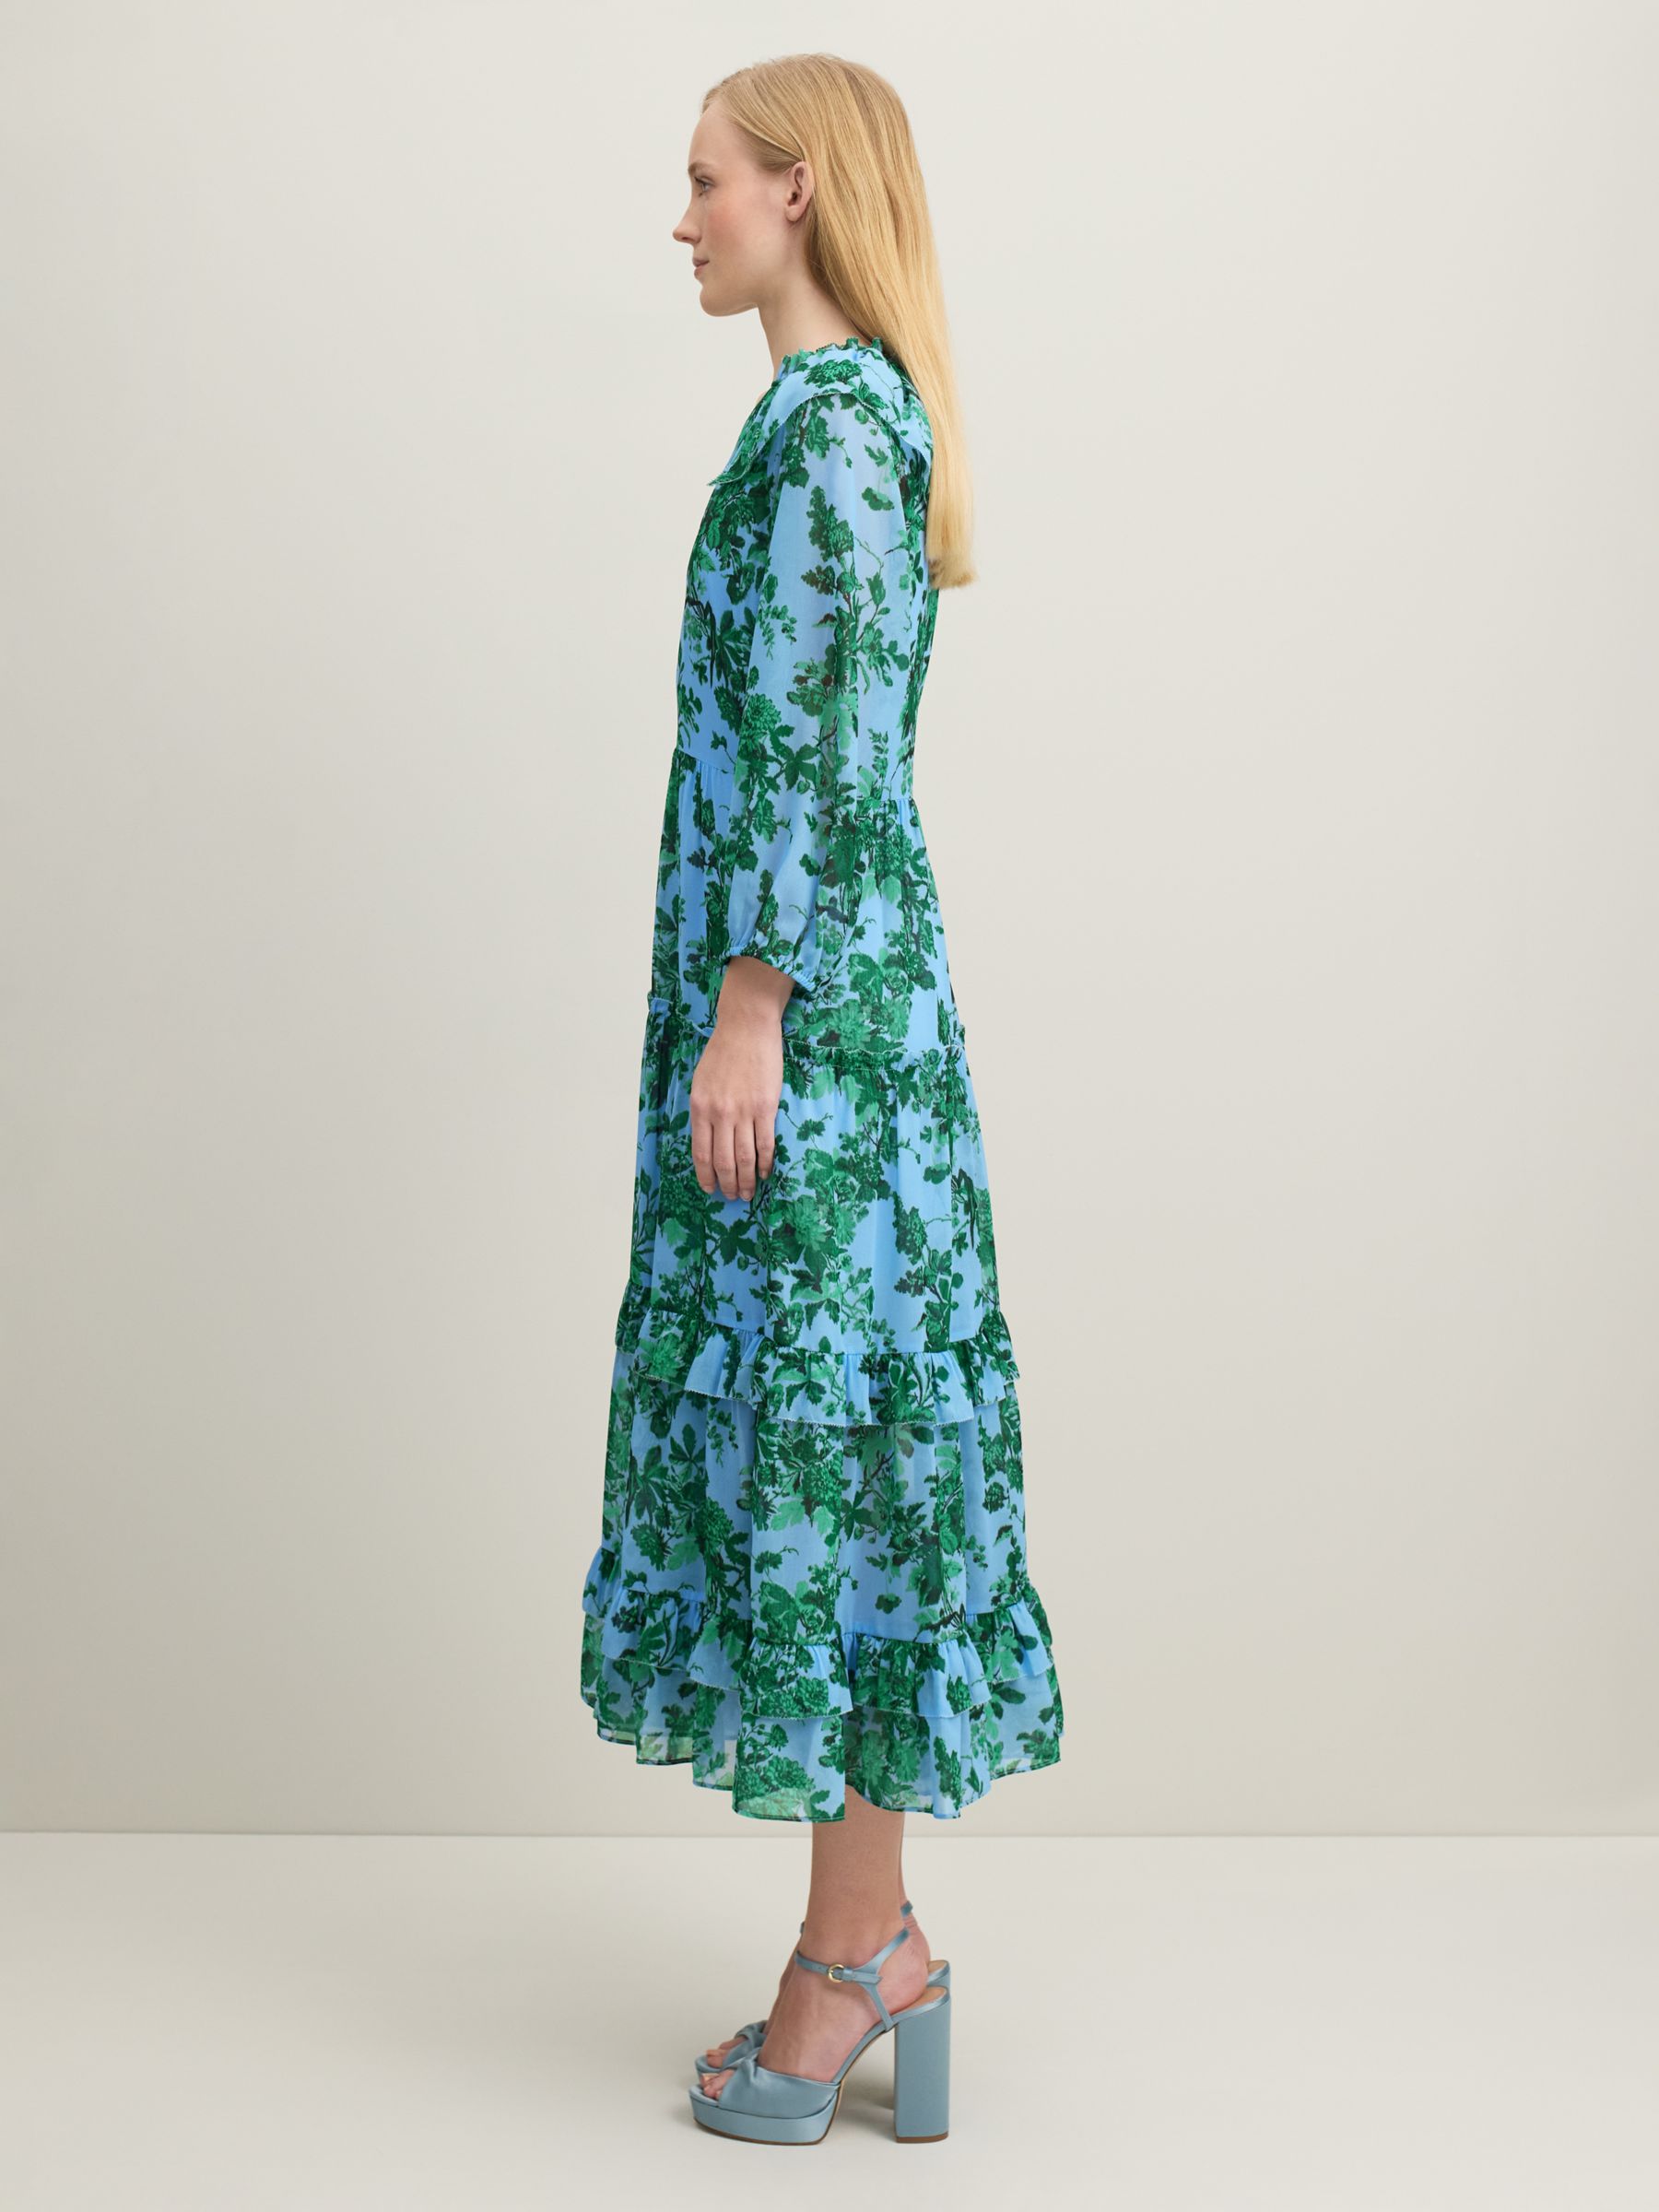 L.K.Bennett Eleanor Midi Floral Dress, Green/Blue, 6